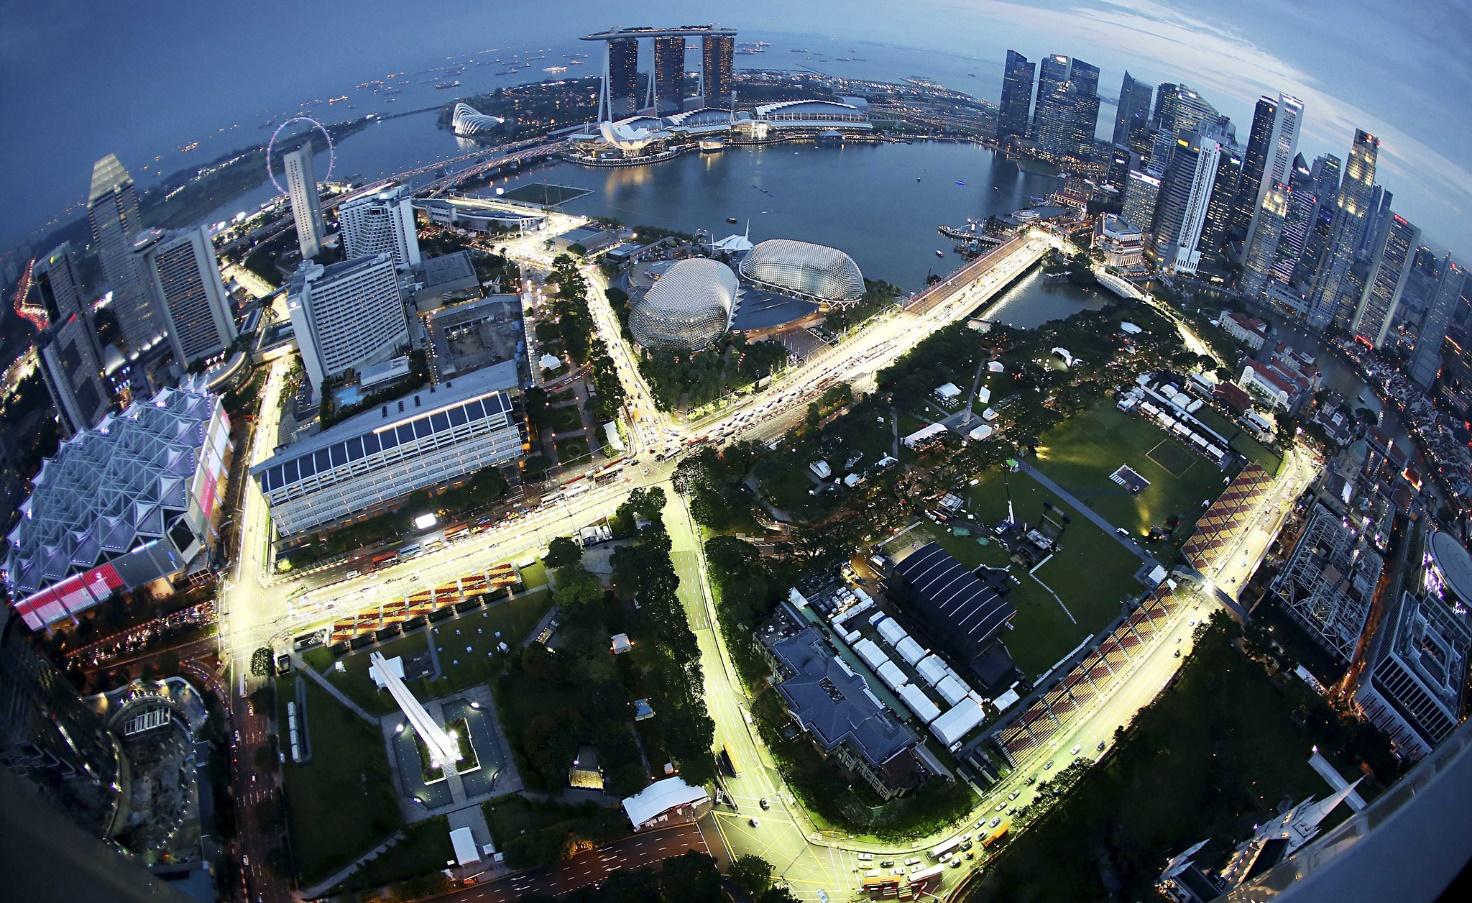 Singapore circuit by night.